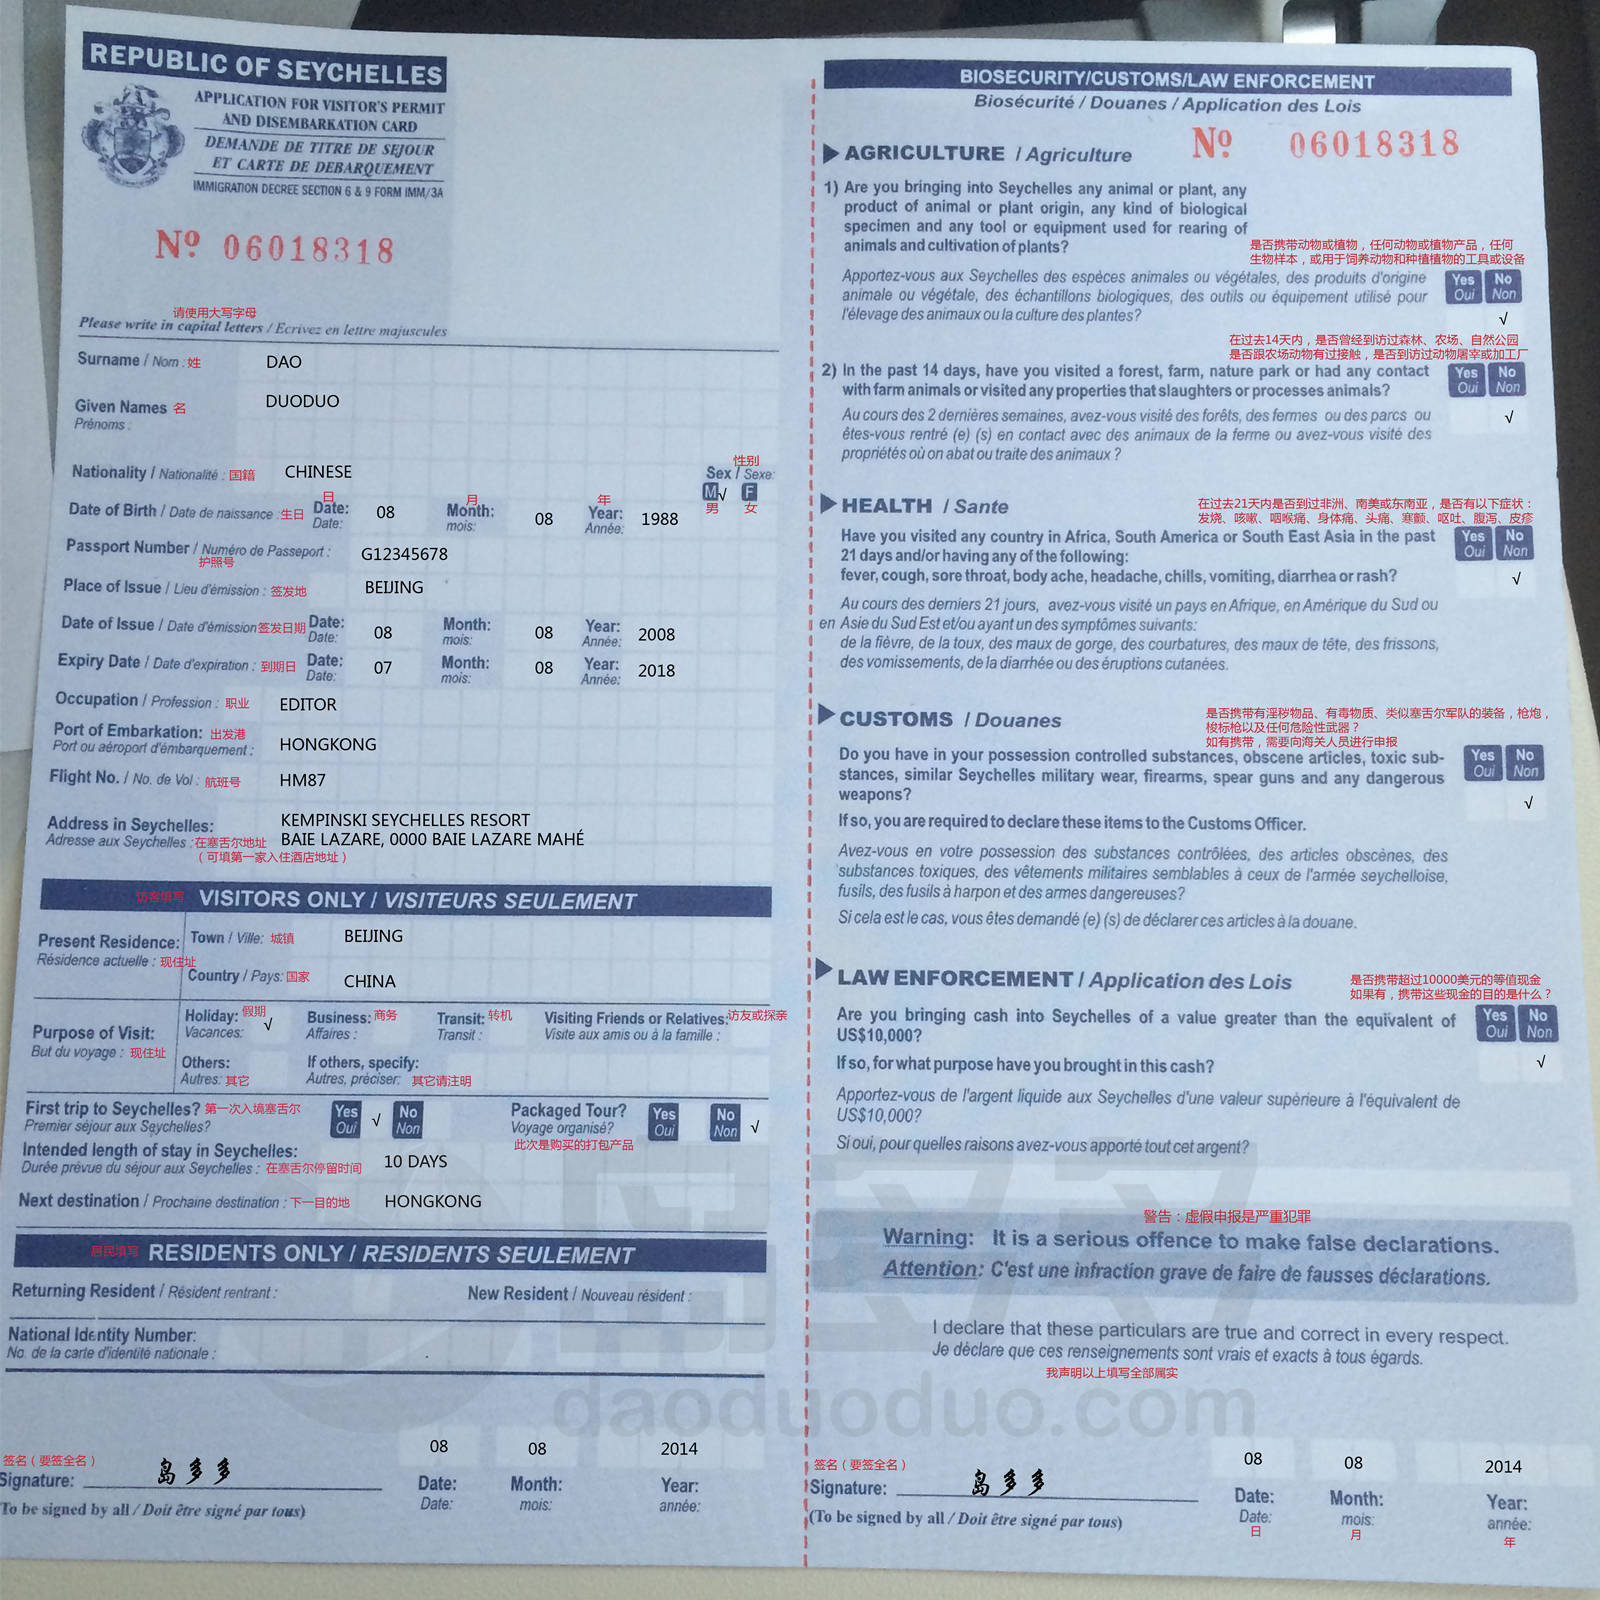 美国入境卡中英文对照图片